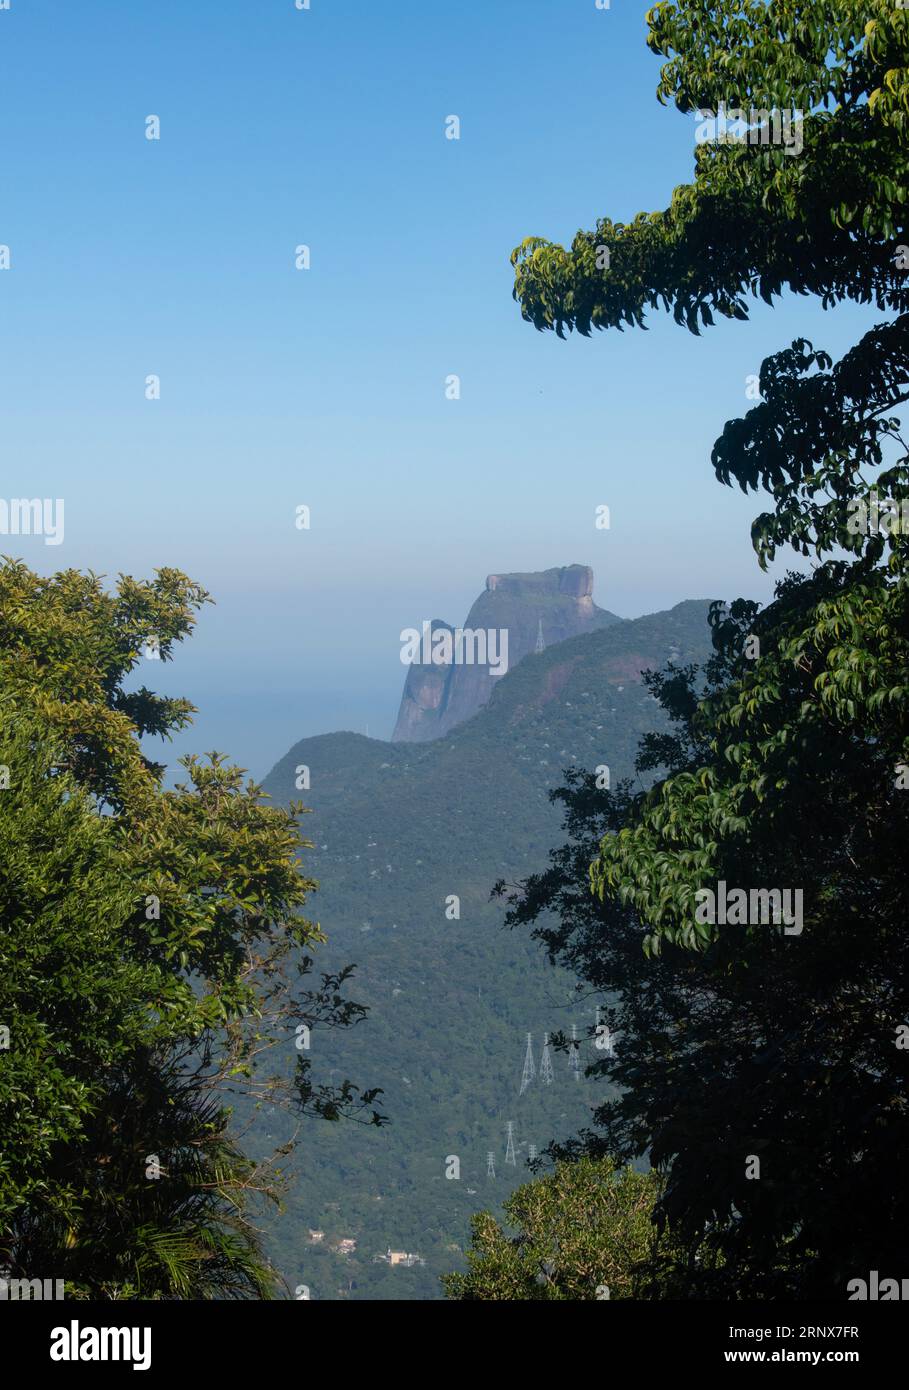 Rio de Janeiro: Vista di Pedra da Gavea, montagna monolitica nella foresta di Tijuca, una delle montagne più alte del mondo che termina direttamente nell'oceano Foto Stock